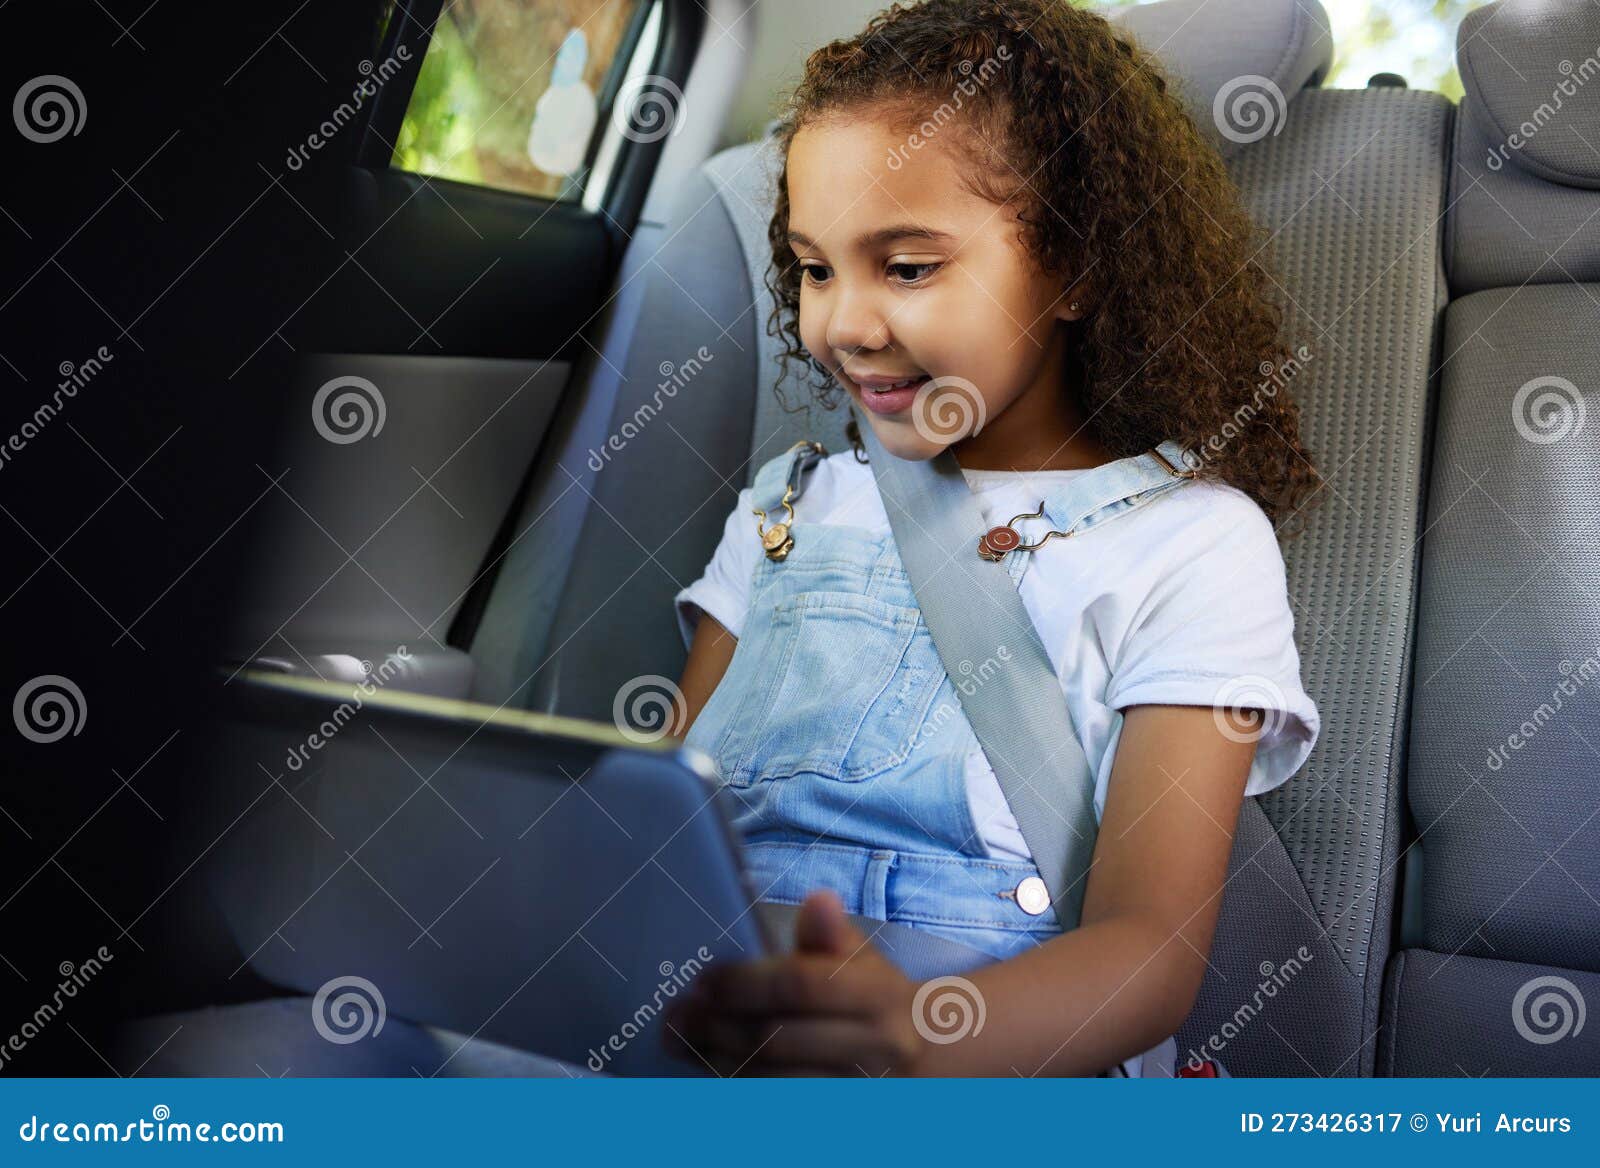 encontrar duas fotos é um jogo educativo para crianças com carro